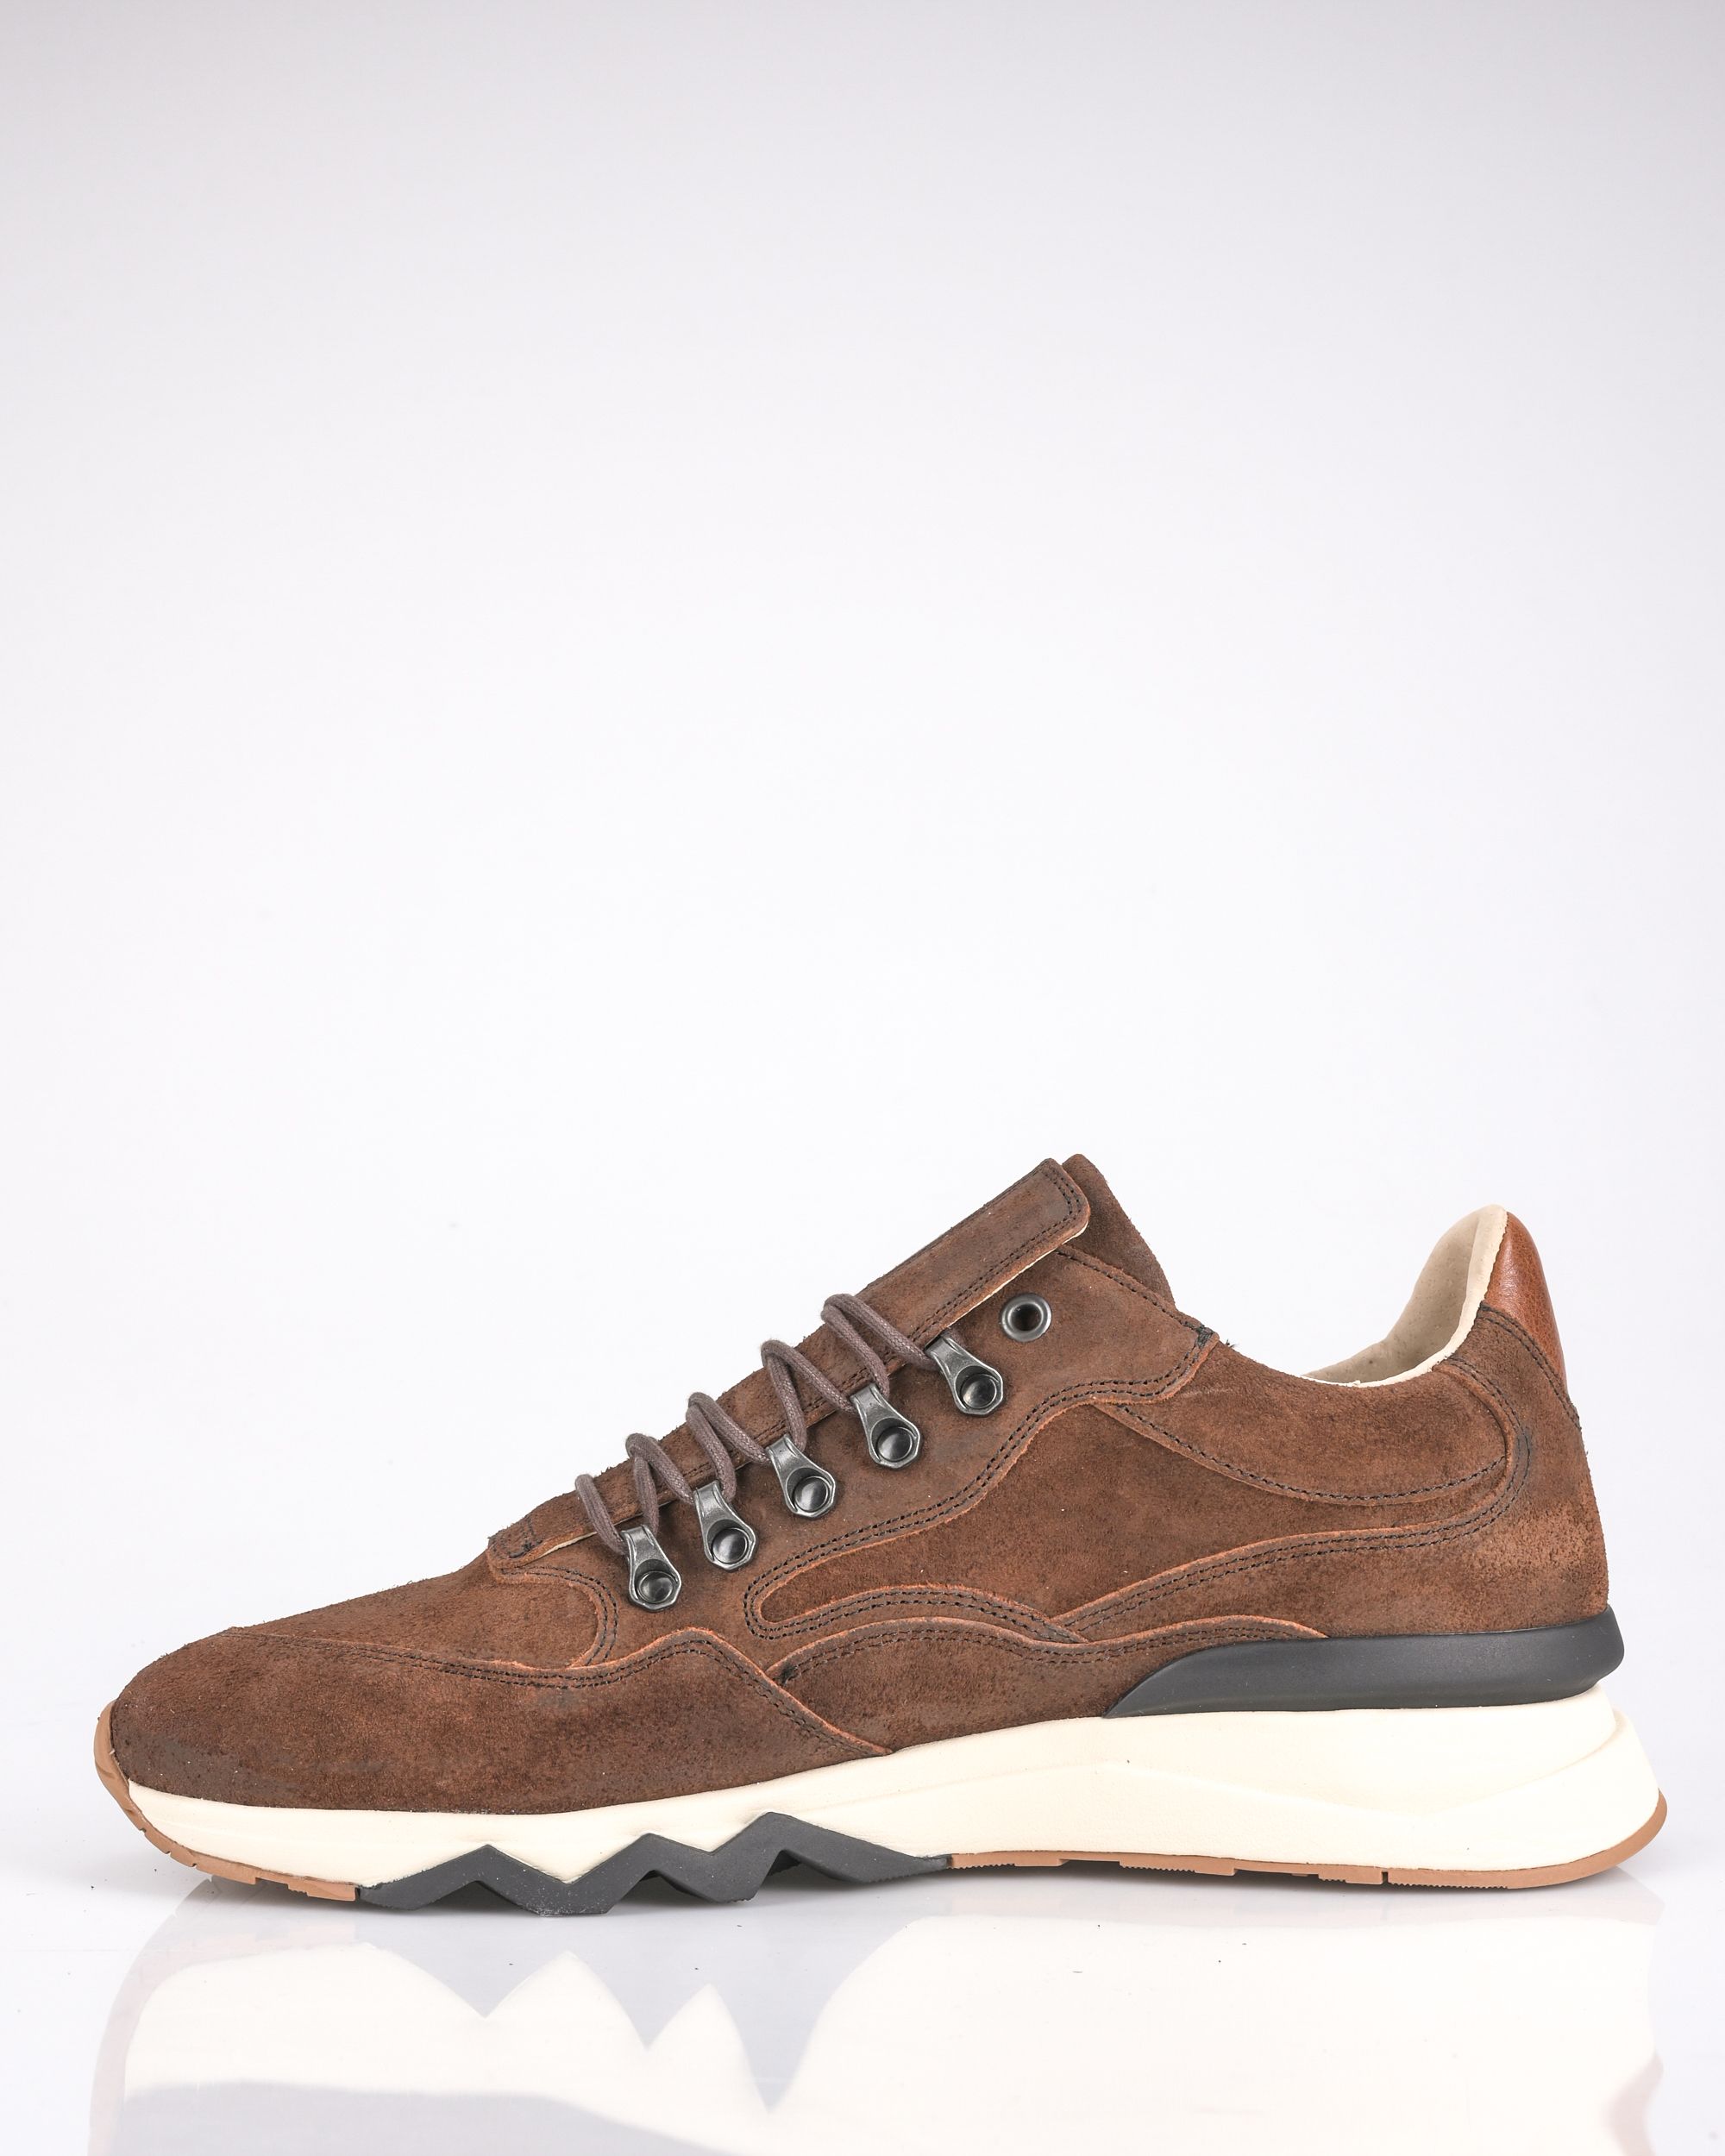 Floris van Bommel Sneakers Cognac 089074-001-10